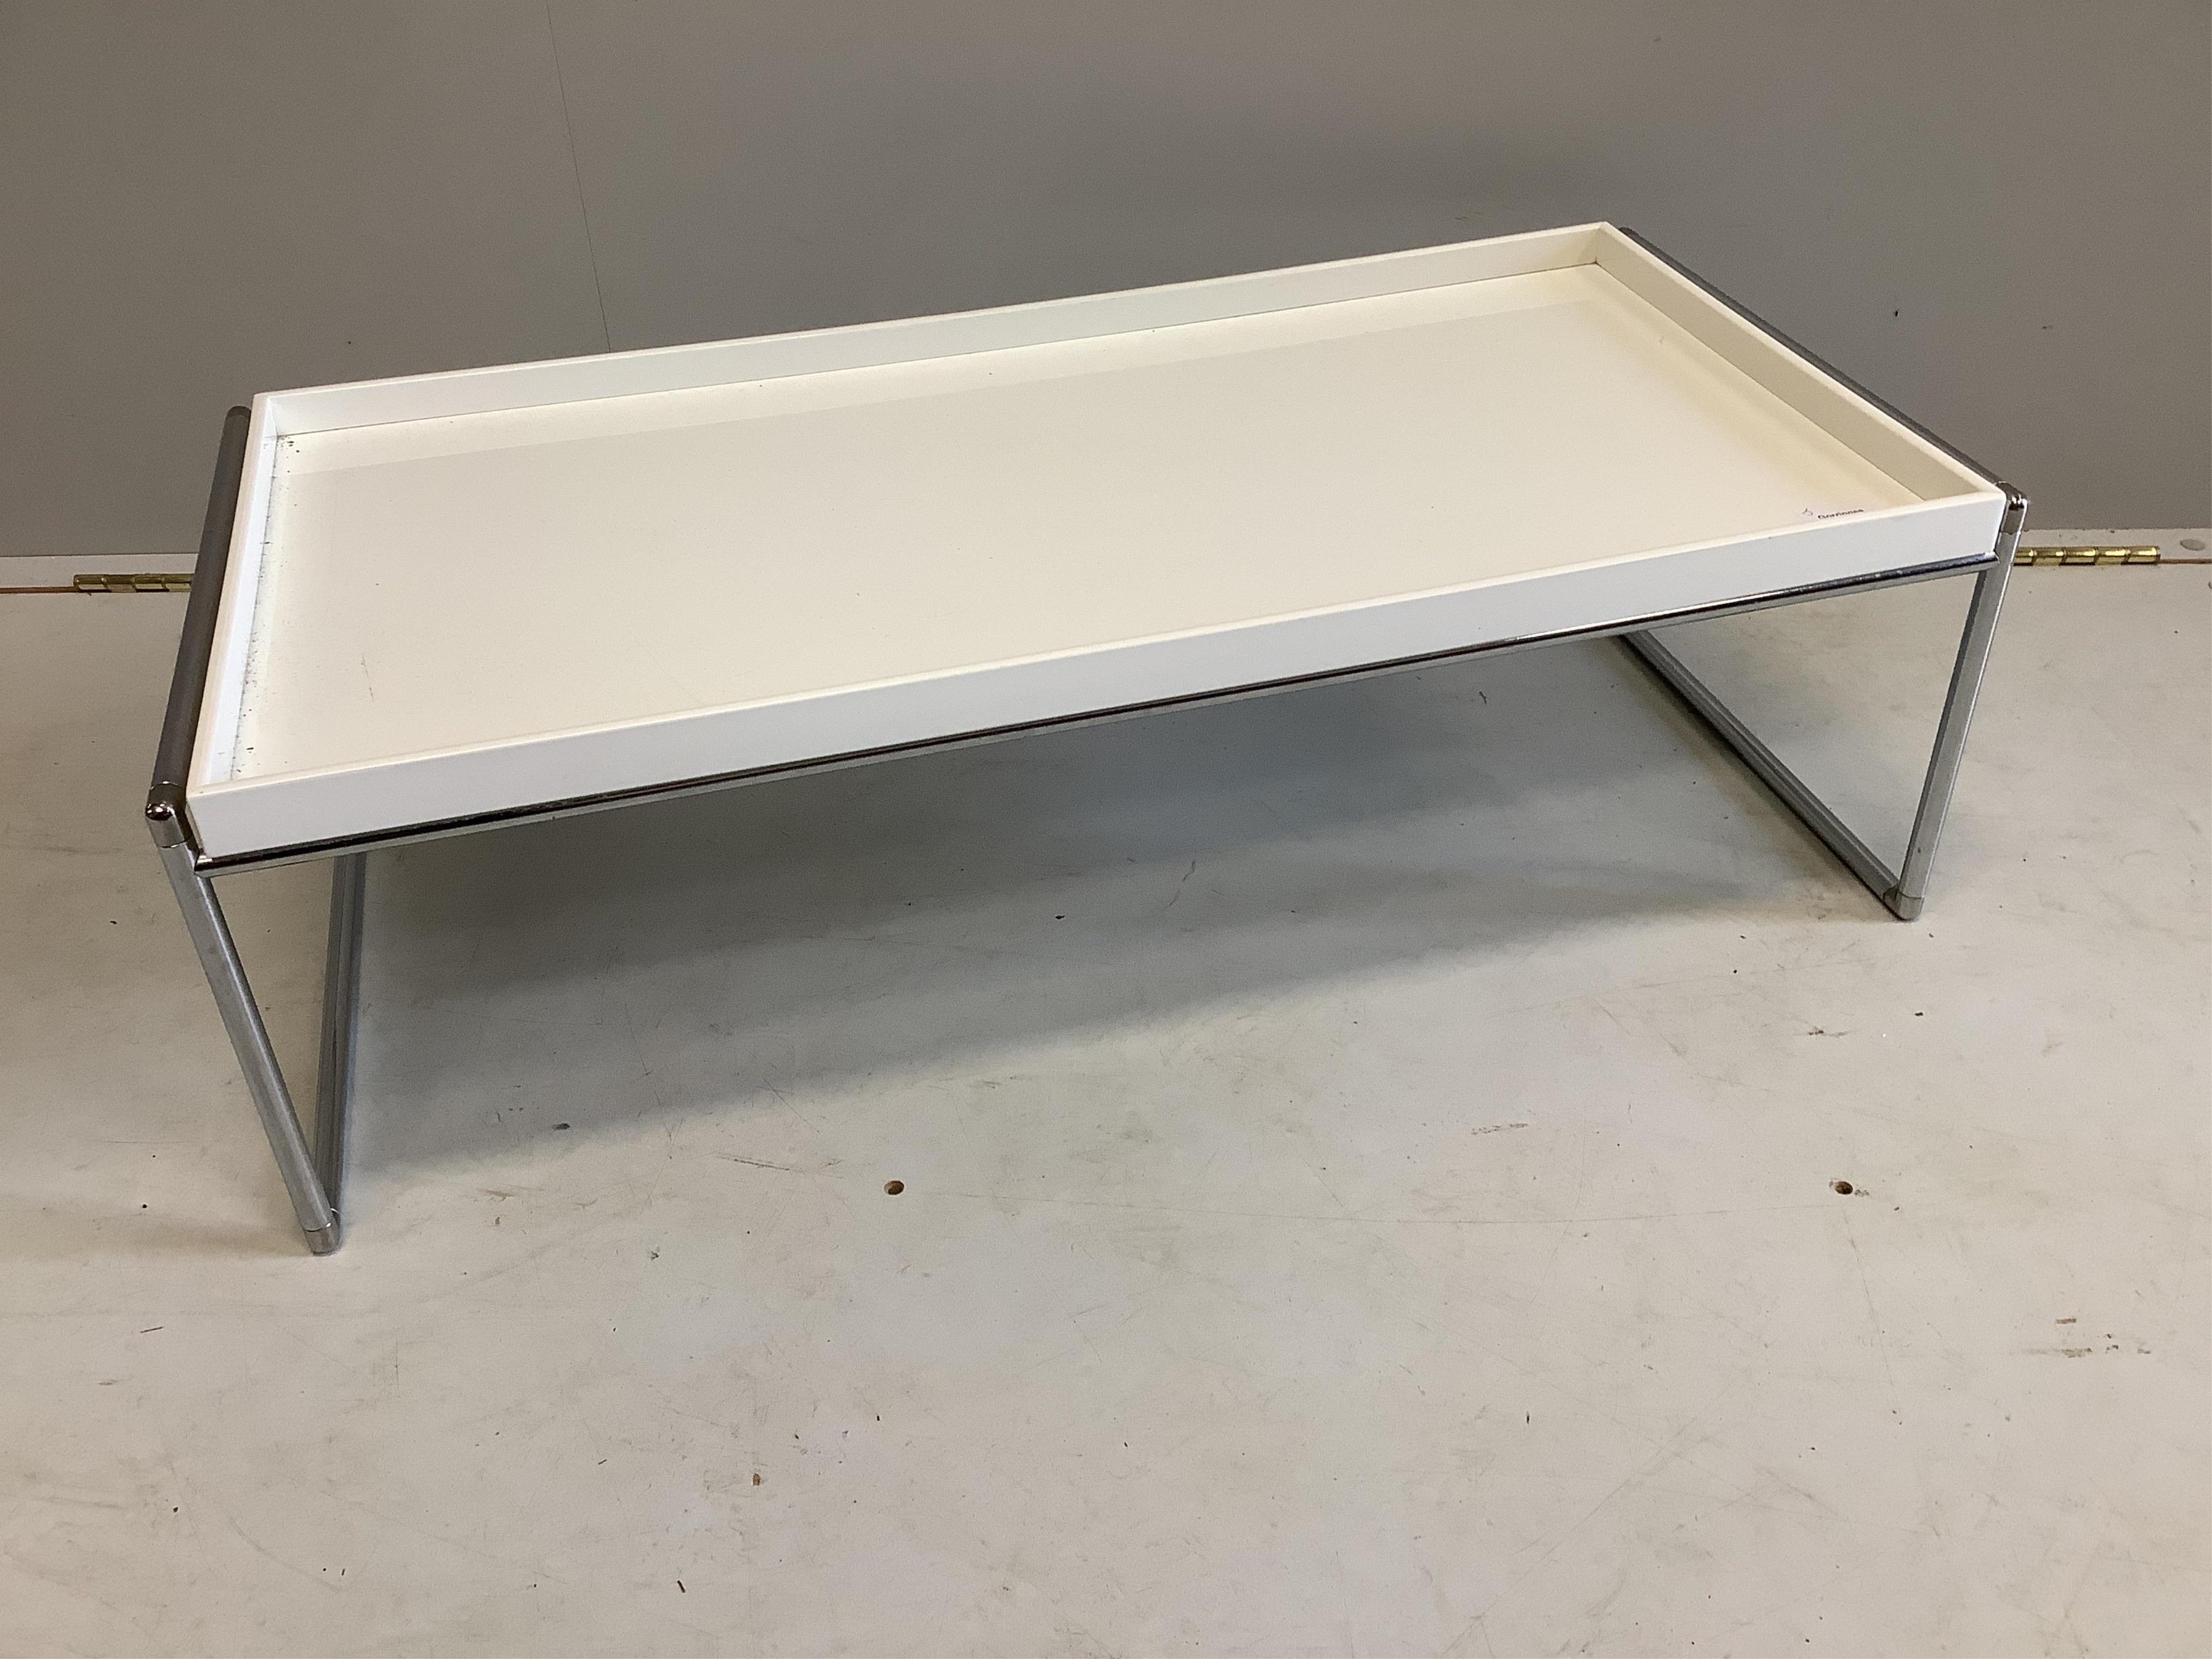 An Italian chrome and melamine coffee table, width 83cm, depth 40cm, height 25cm